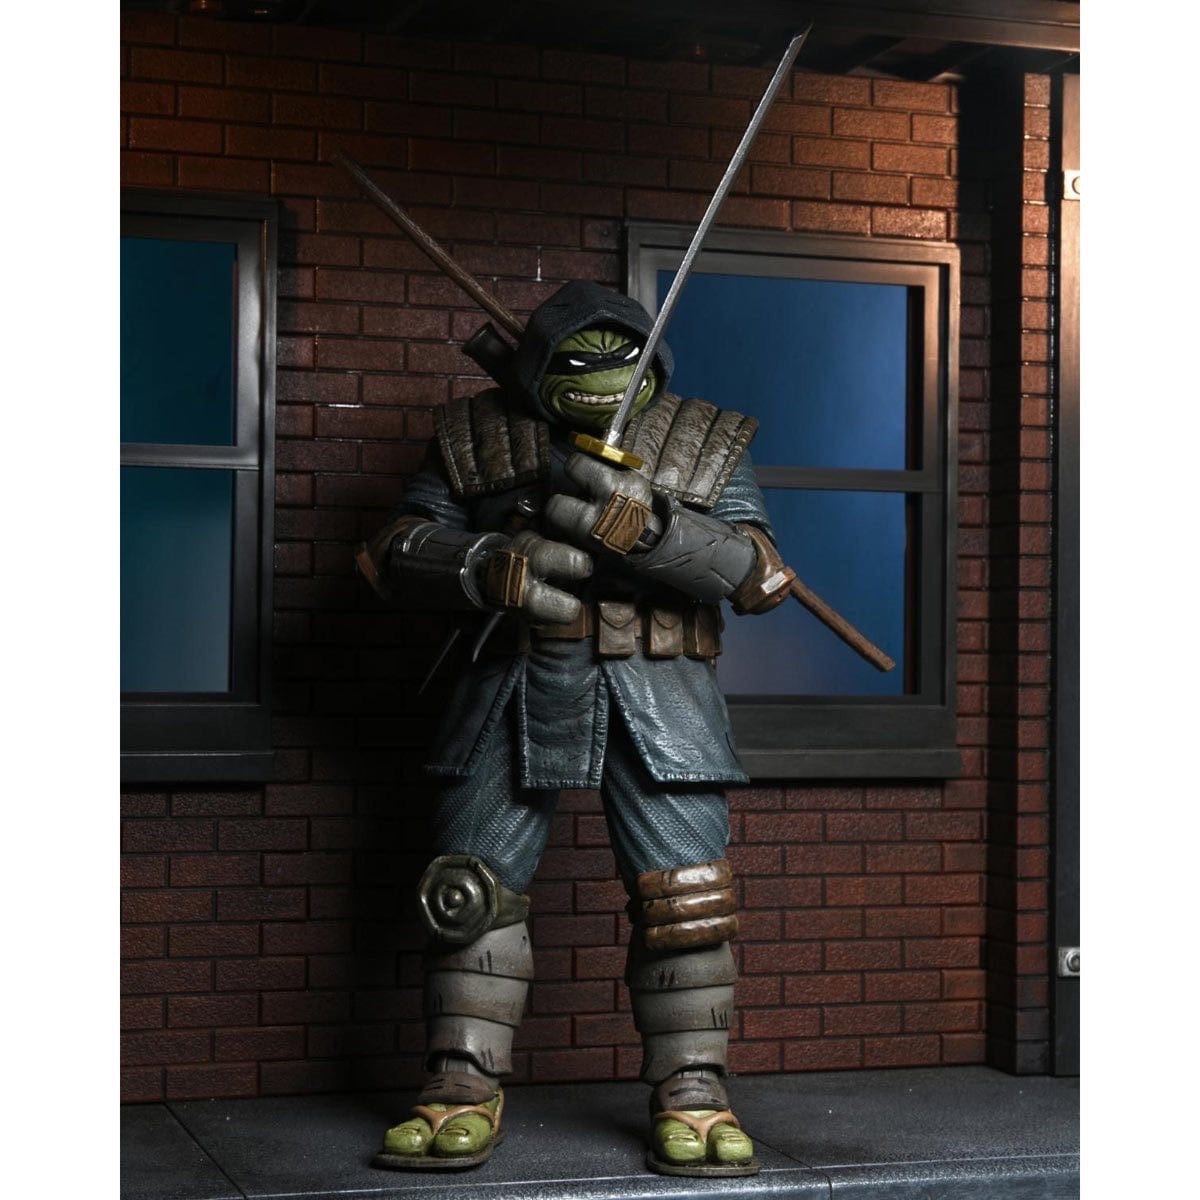 NECA Teenage Mutant Ninja Turtles Ultimate The Last Ronin Armored Action Figure